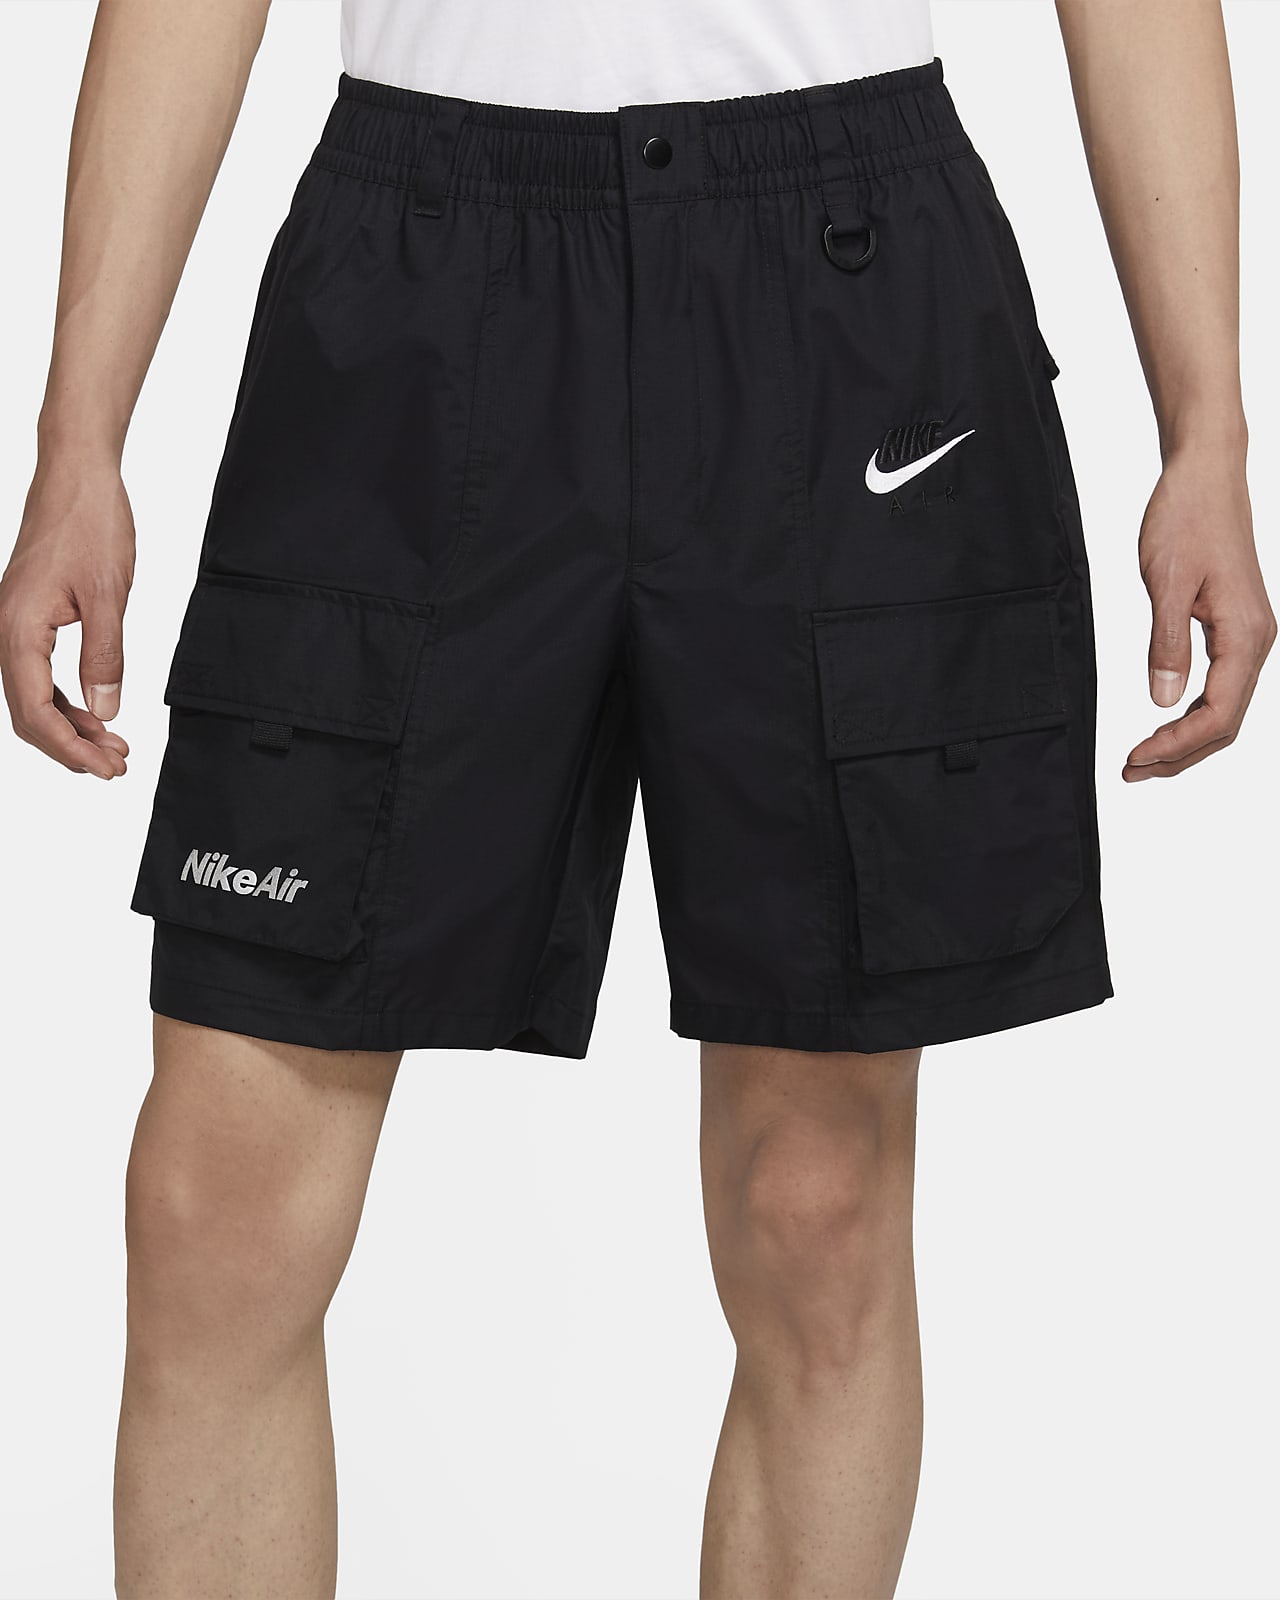 Nike Air Men's Shorts. Nike JP